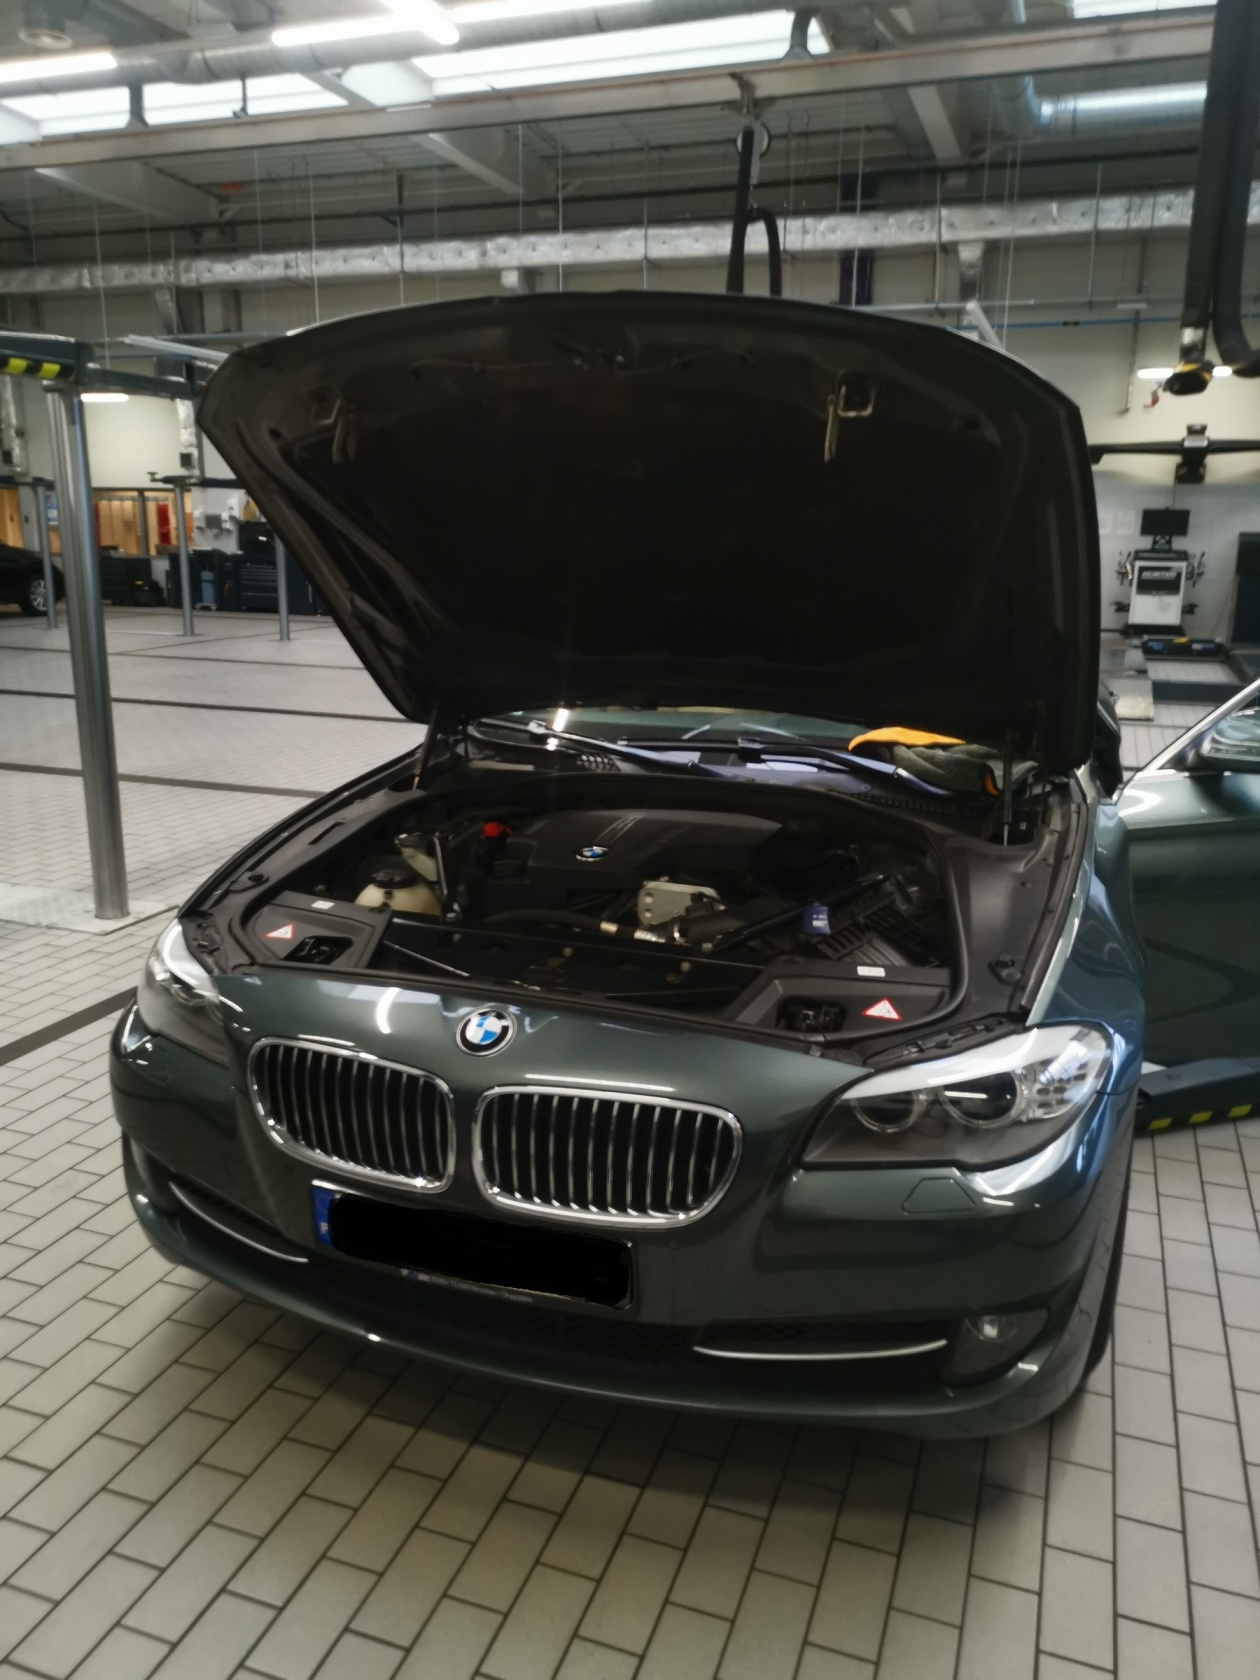 BMWklub.pl • Zobacz temat F10 Deejay 528i Xdrive